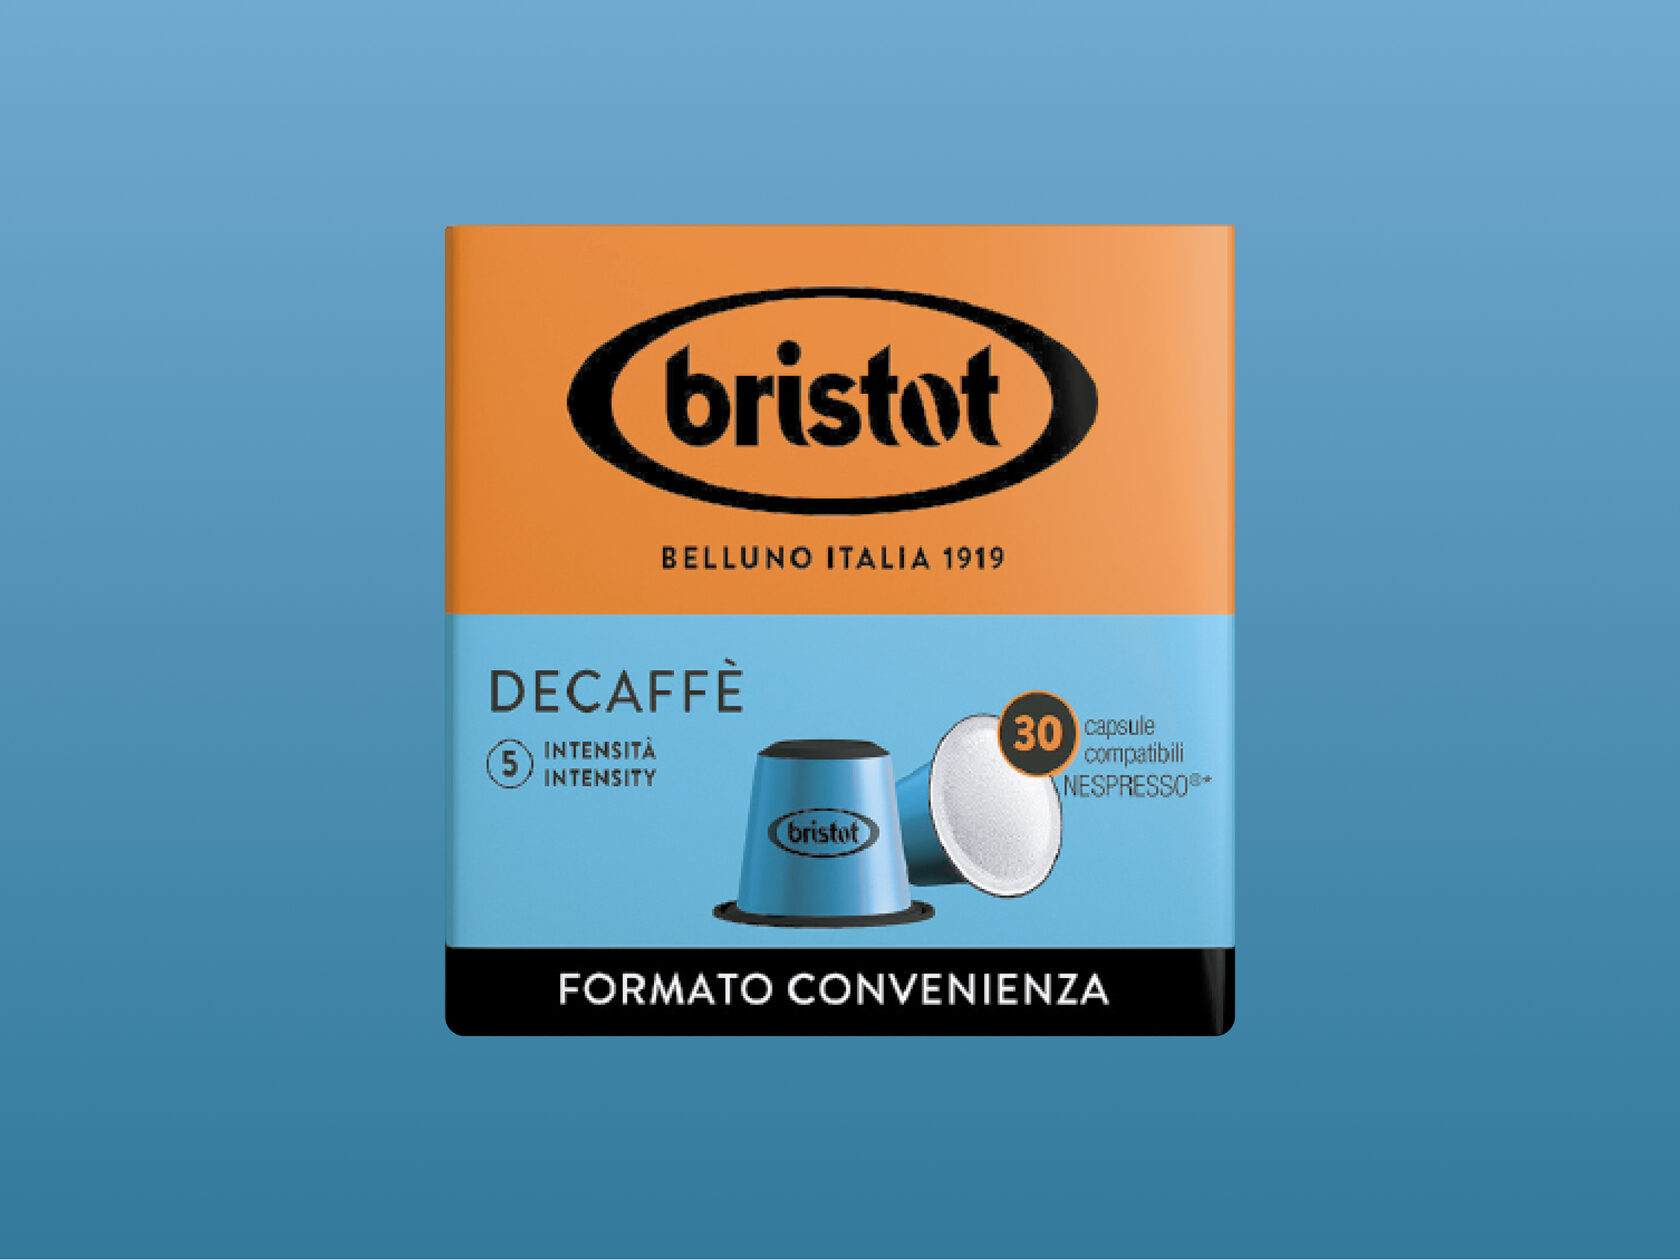 Bristot кофе. Bristot кофе logo. Decaffe и Decaf. Bristot Ethiopia. Кофеины смеси